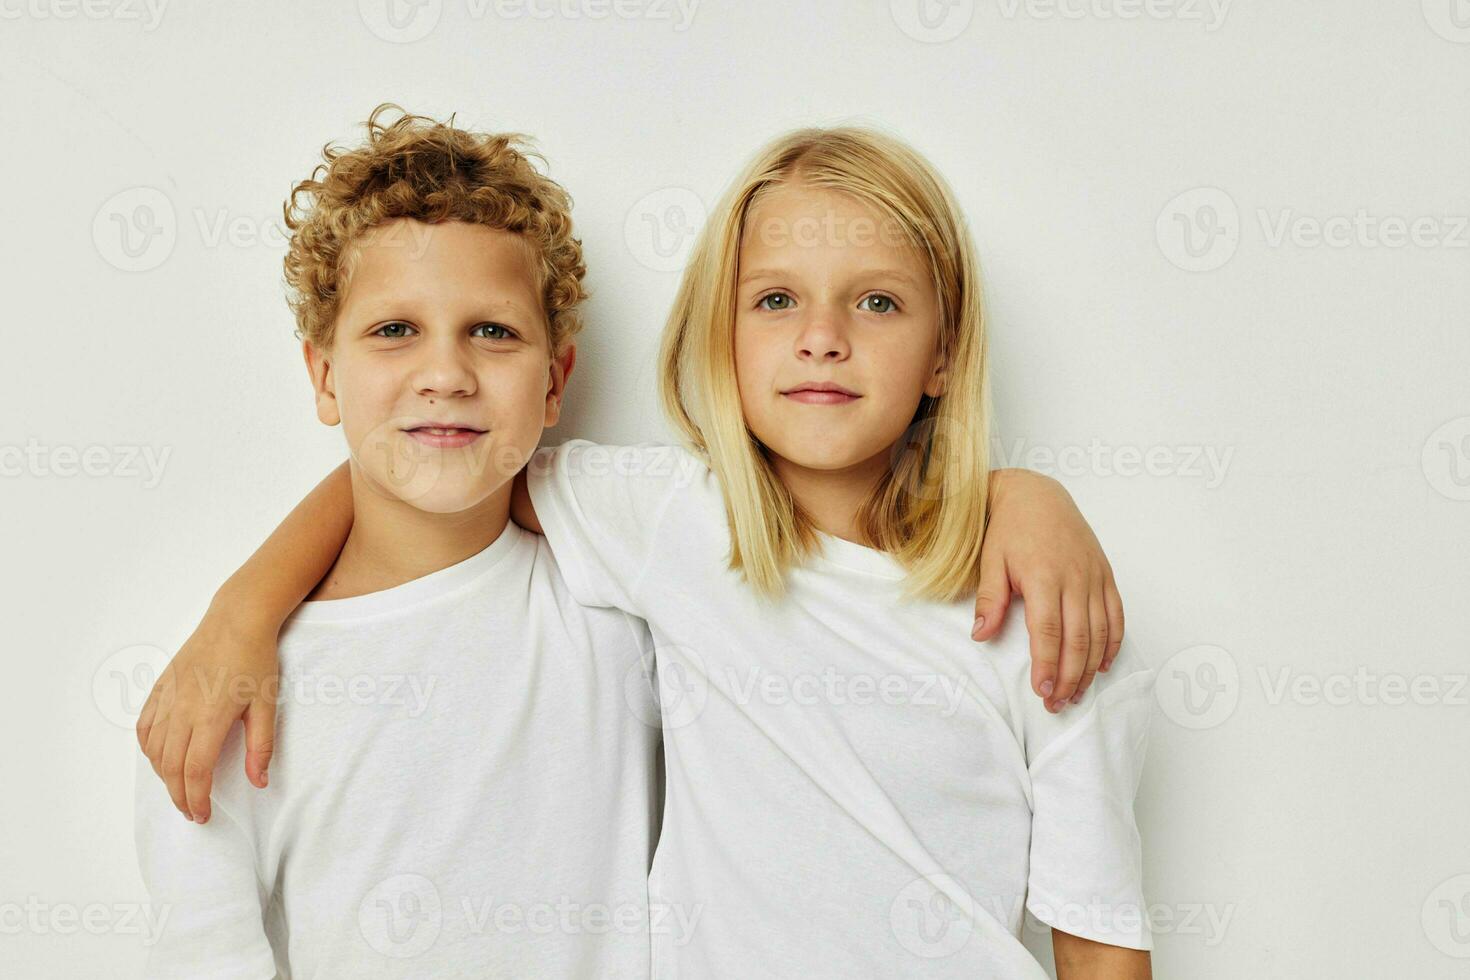 jongen en meisje vriendschap poseren samen kinderjaren ongewijzigd foto